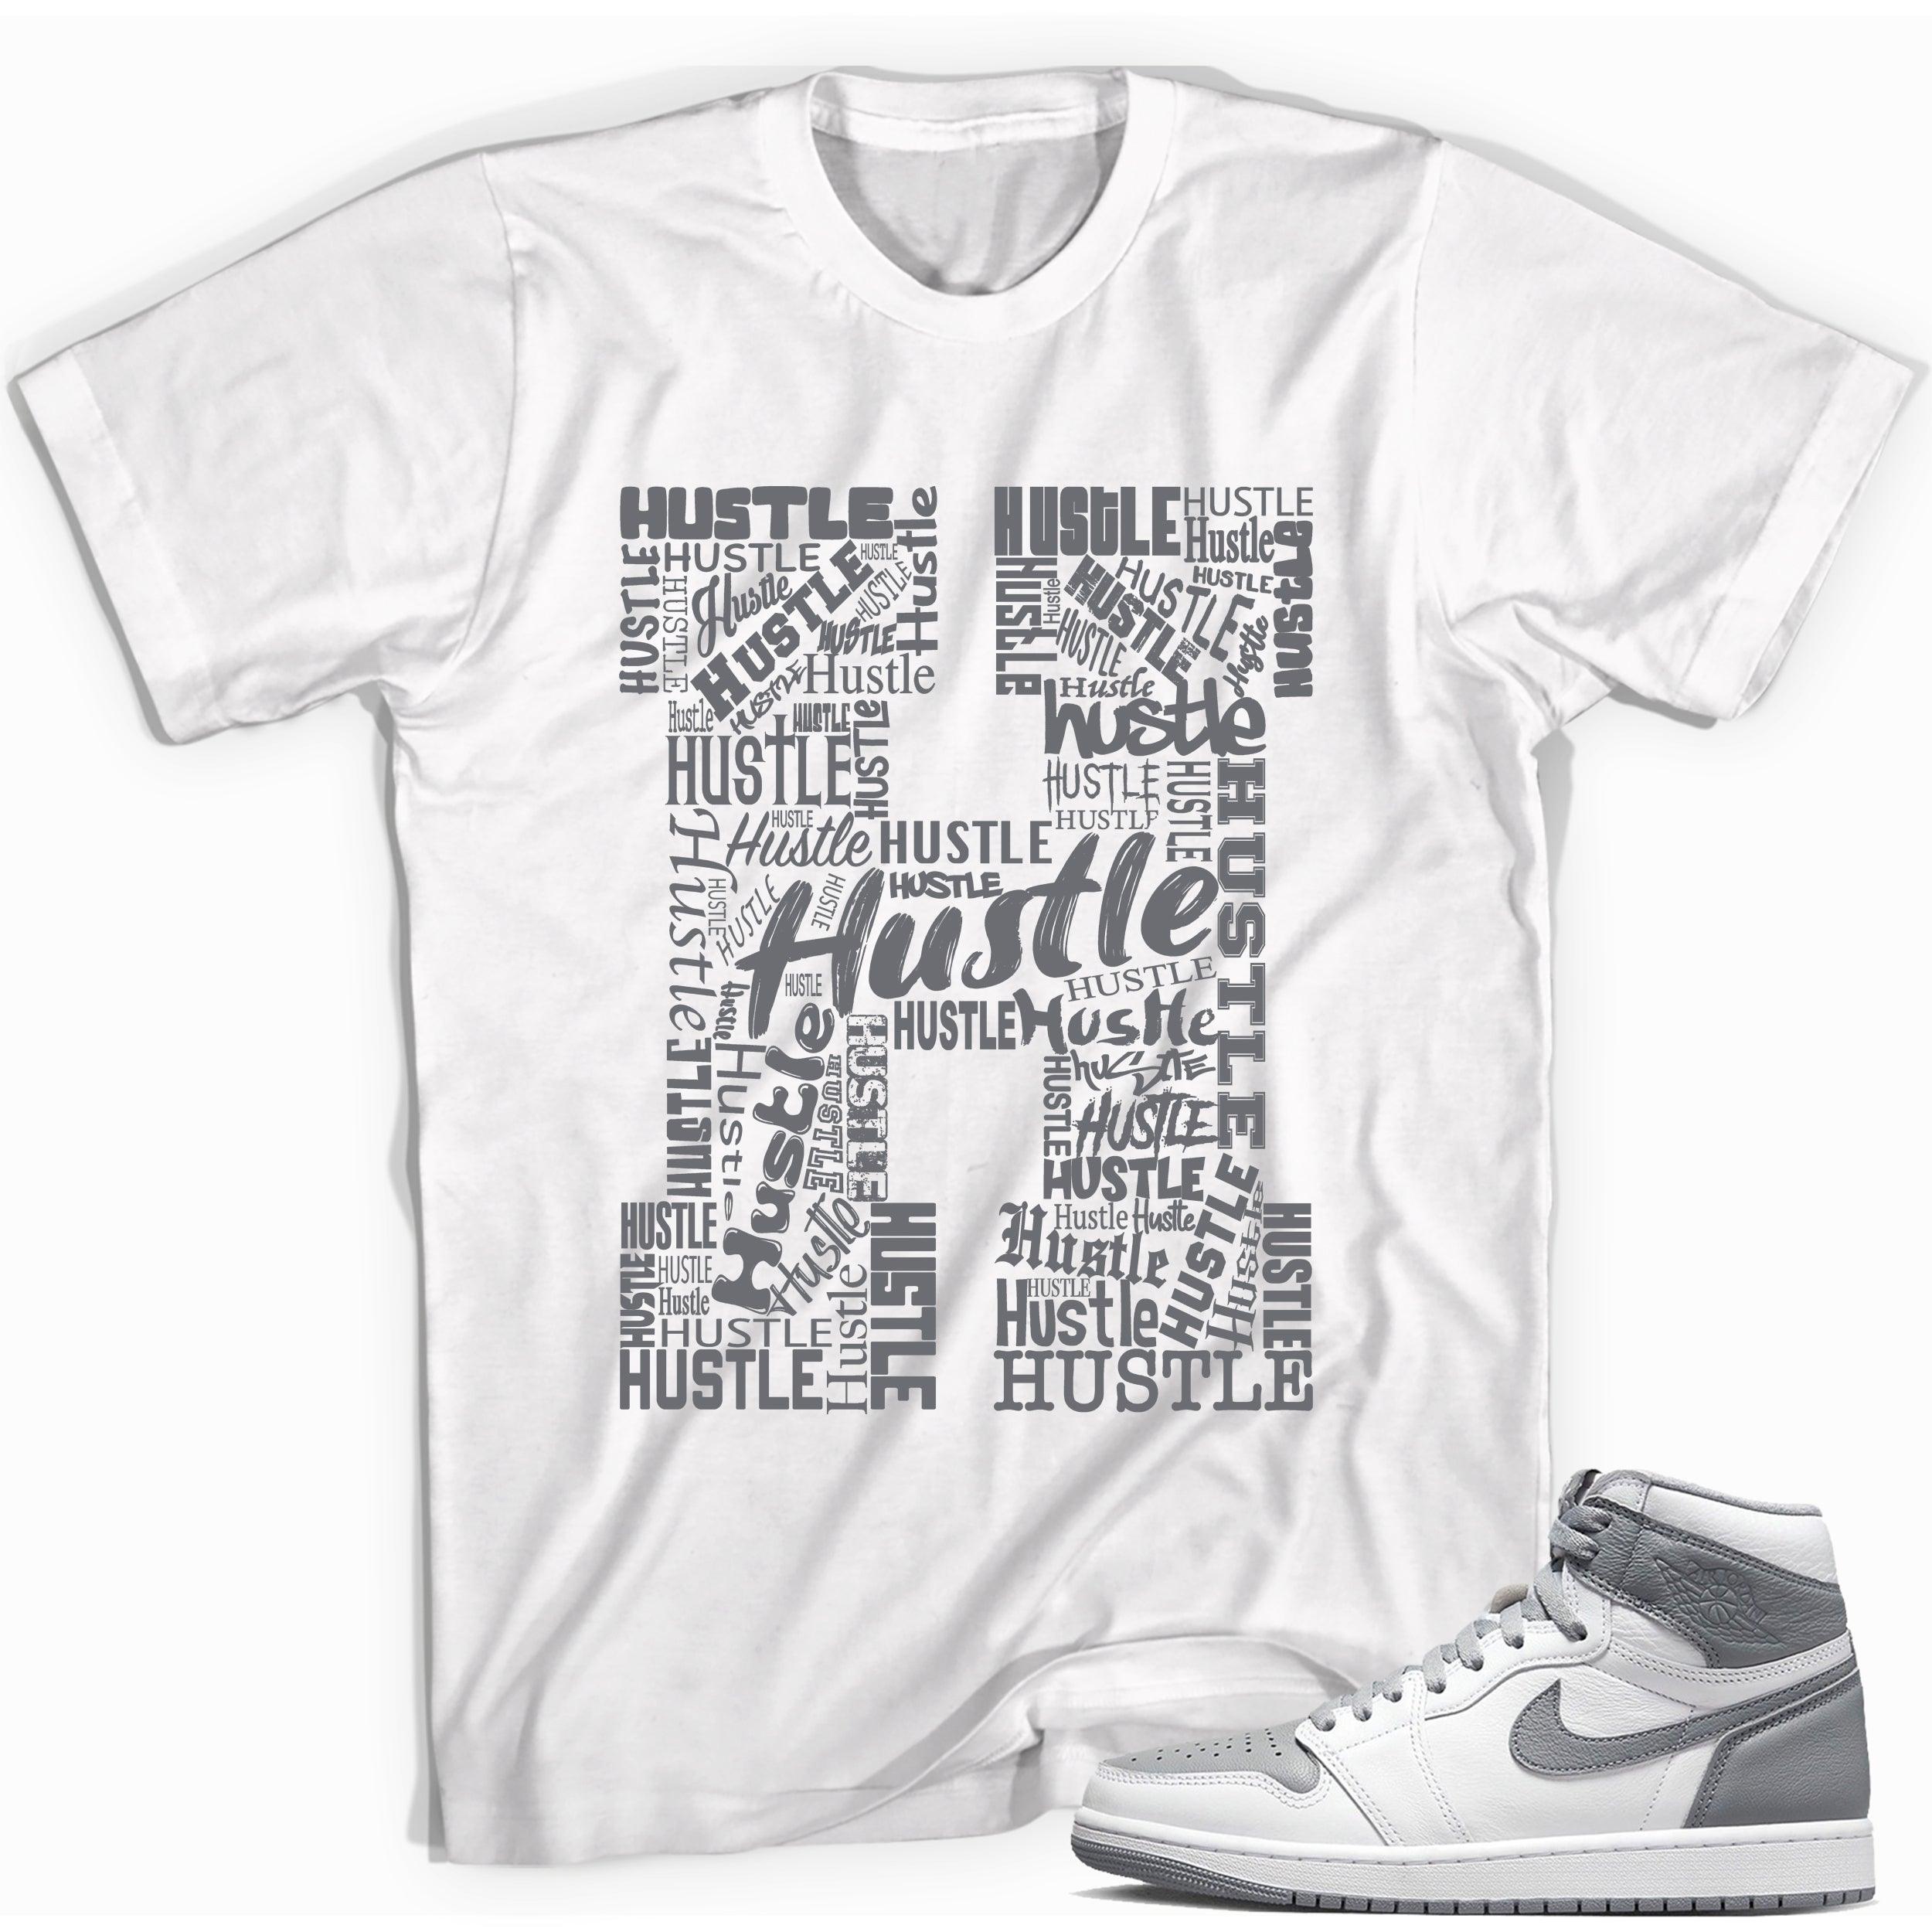 H for Hustle Sneaker Tee for Jordan 1s photo